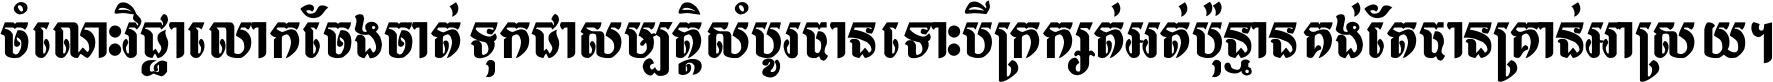 Khmer Bold Kbach